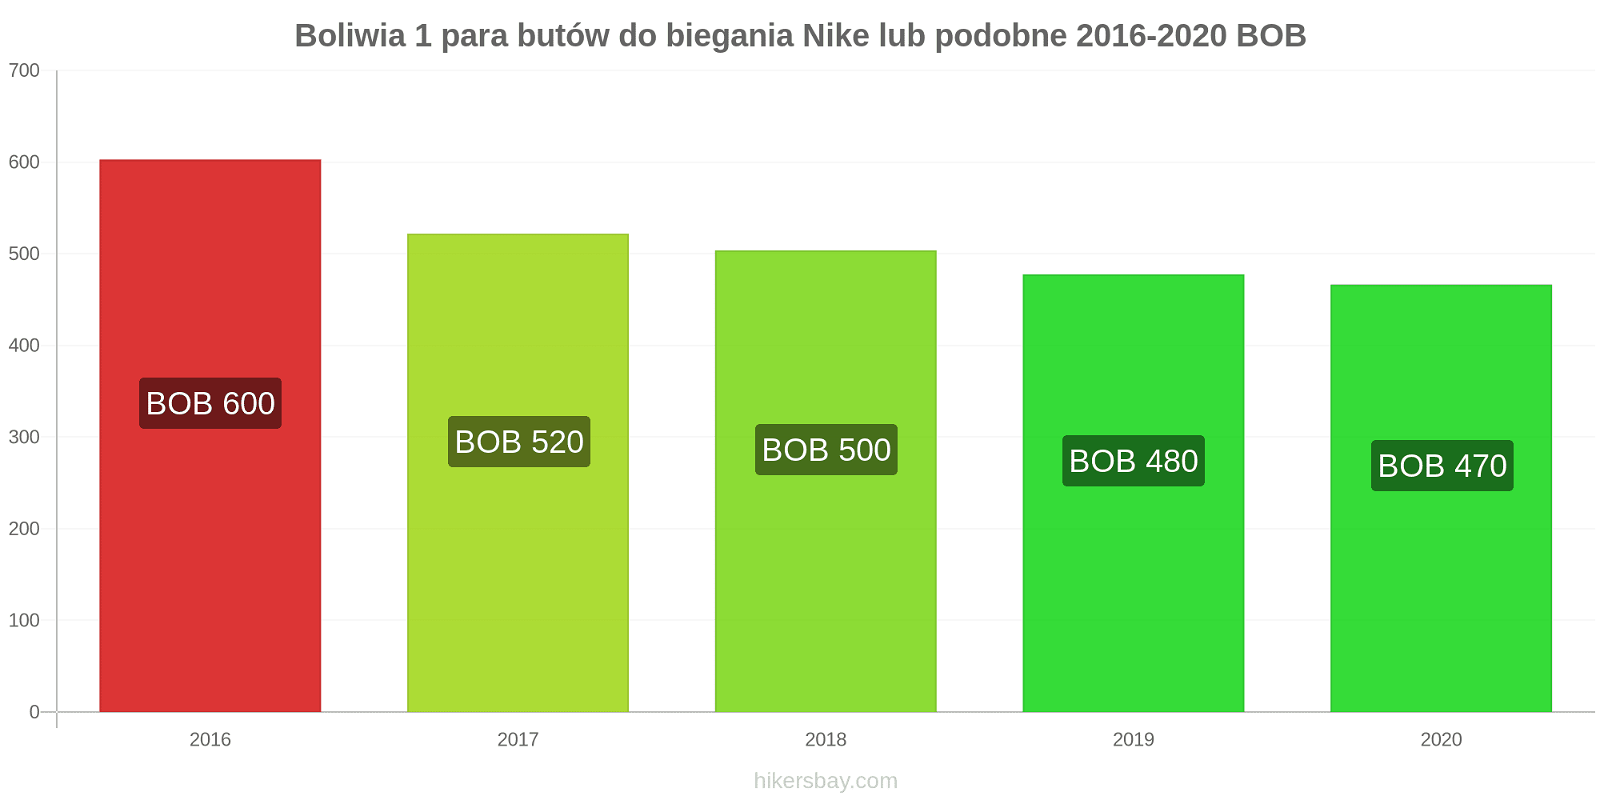 Boliwia zmiany cen 1 para butów do biegania Nike lub podobne hikersbay.com